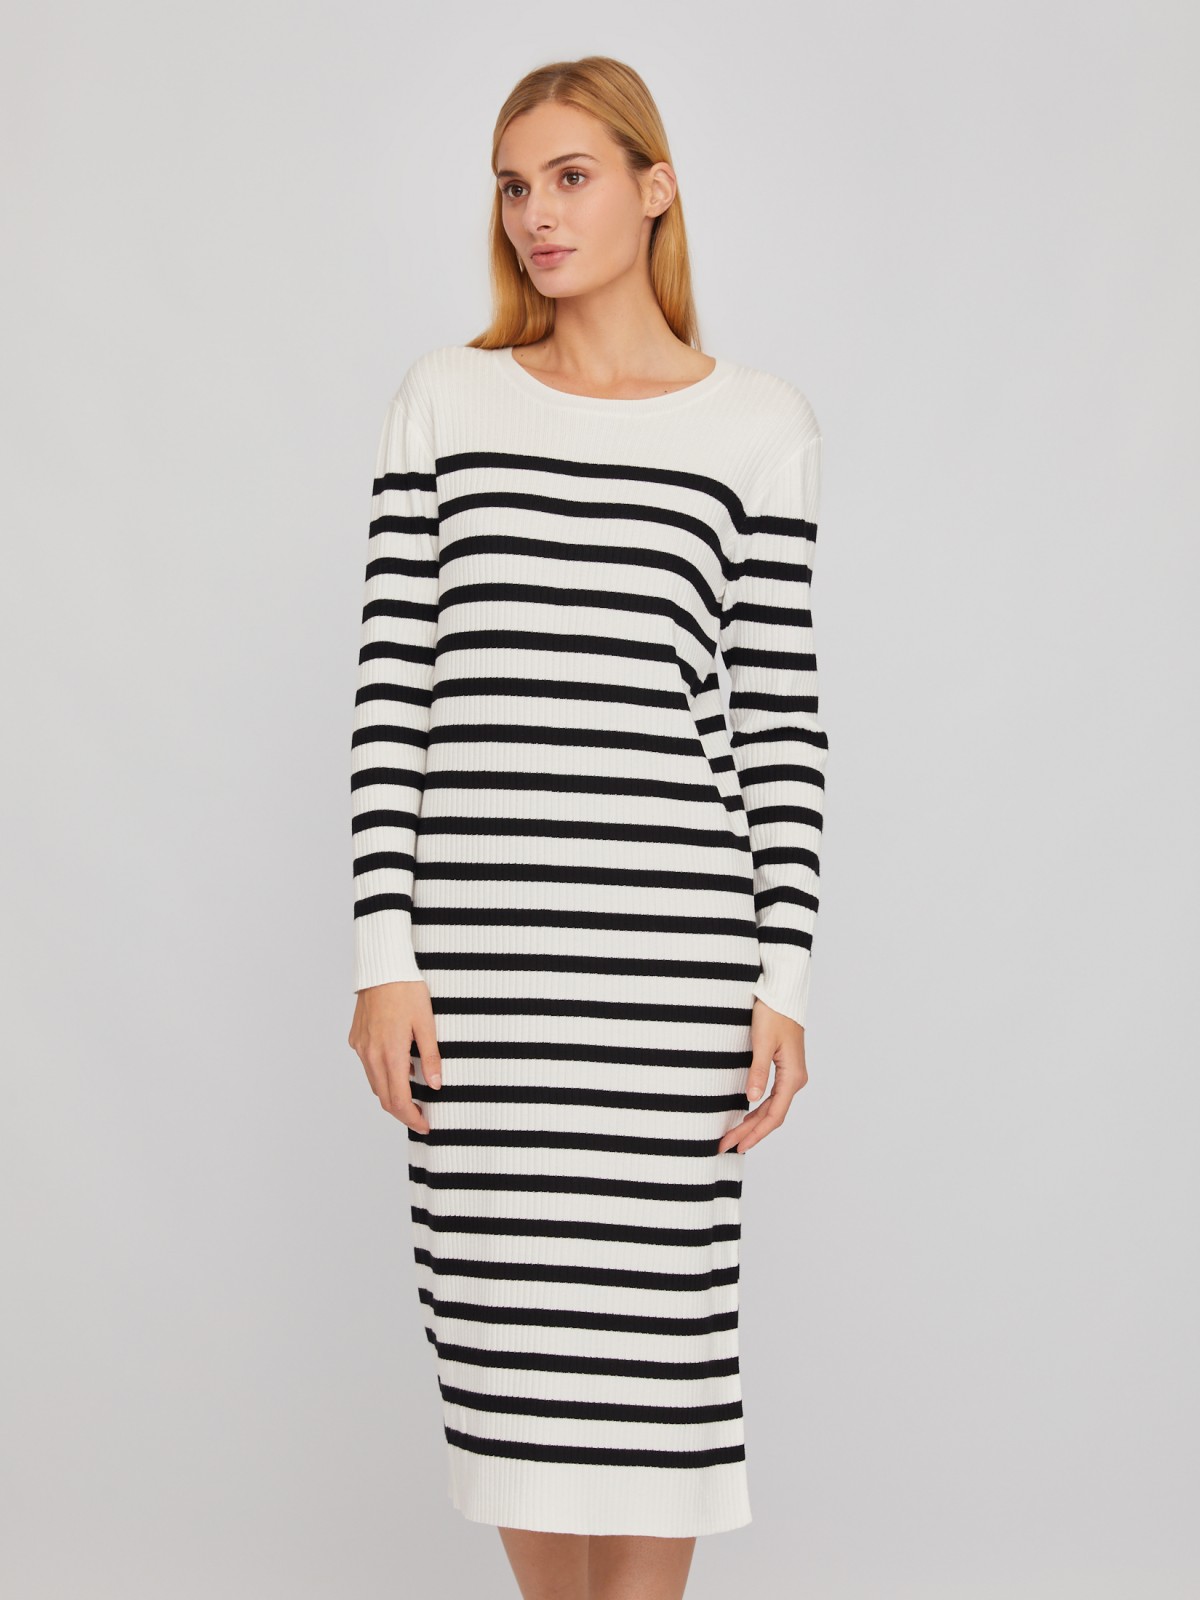 Трикотажное платье длины миди с узором в полоску zolla 024118465011, цвет белый, размер XS